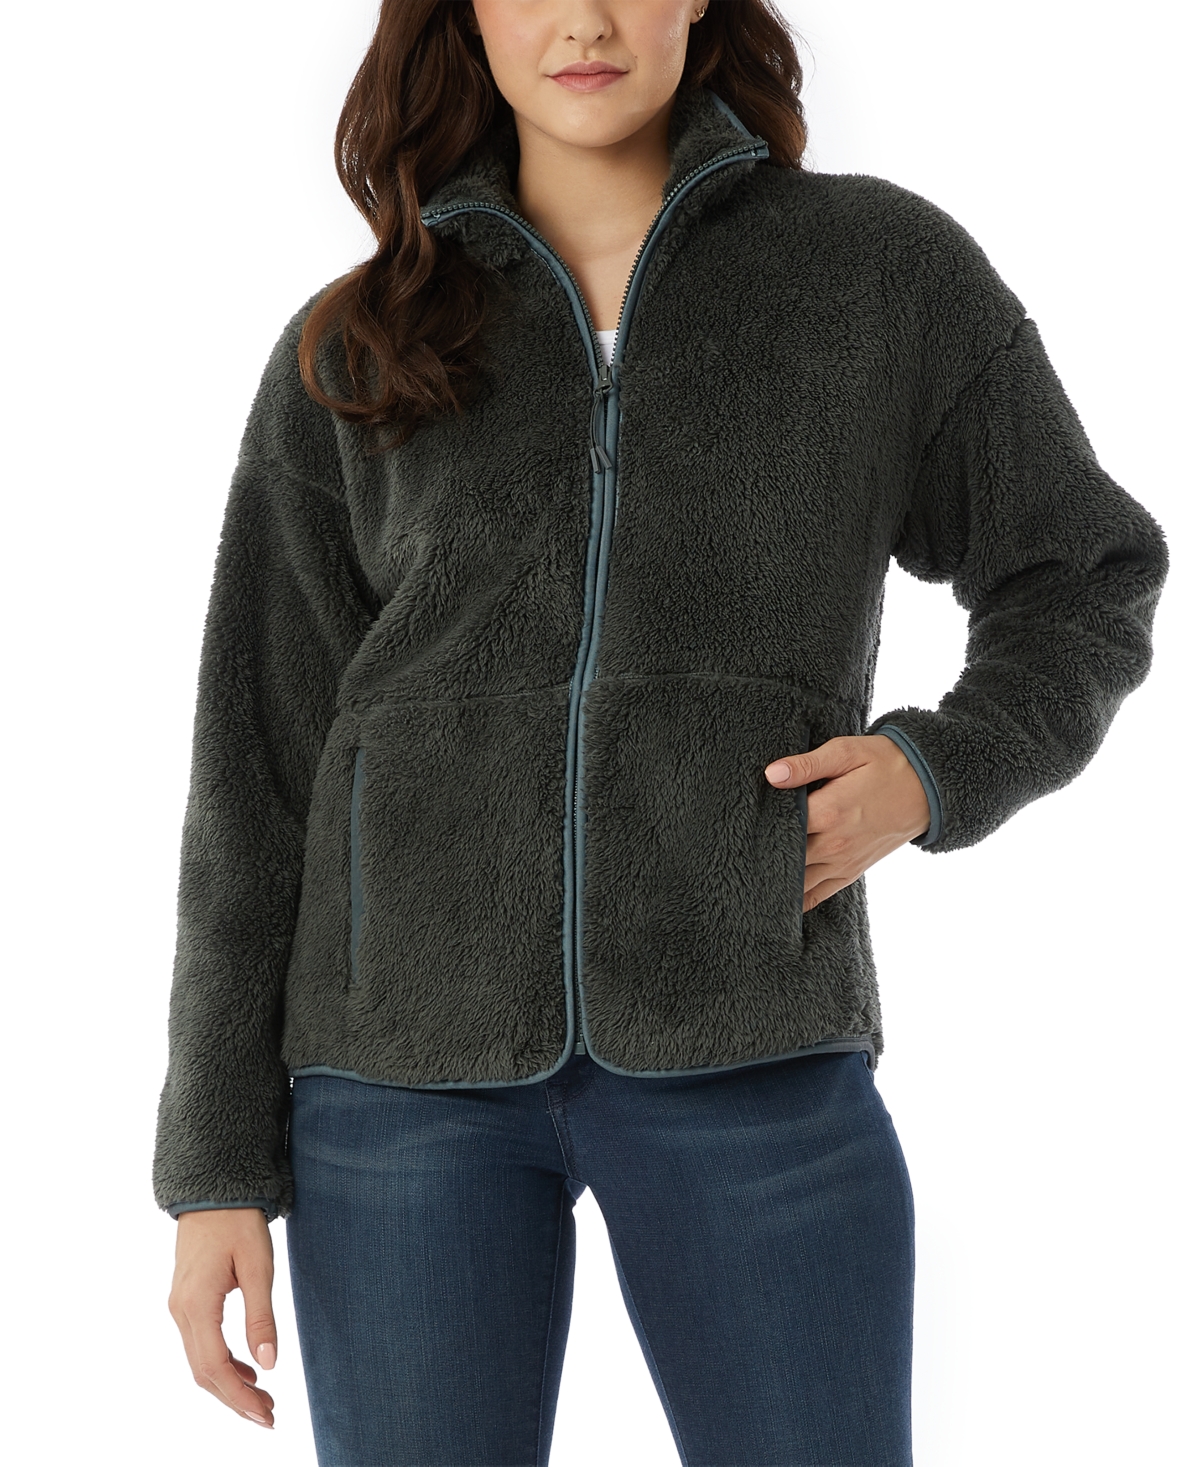 Women's Fleece Front-Zipper Drop-Shoulder Sweatshirt - Unexplored